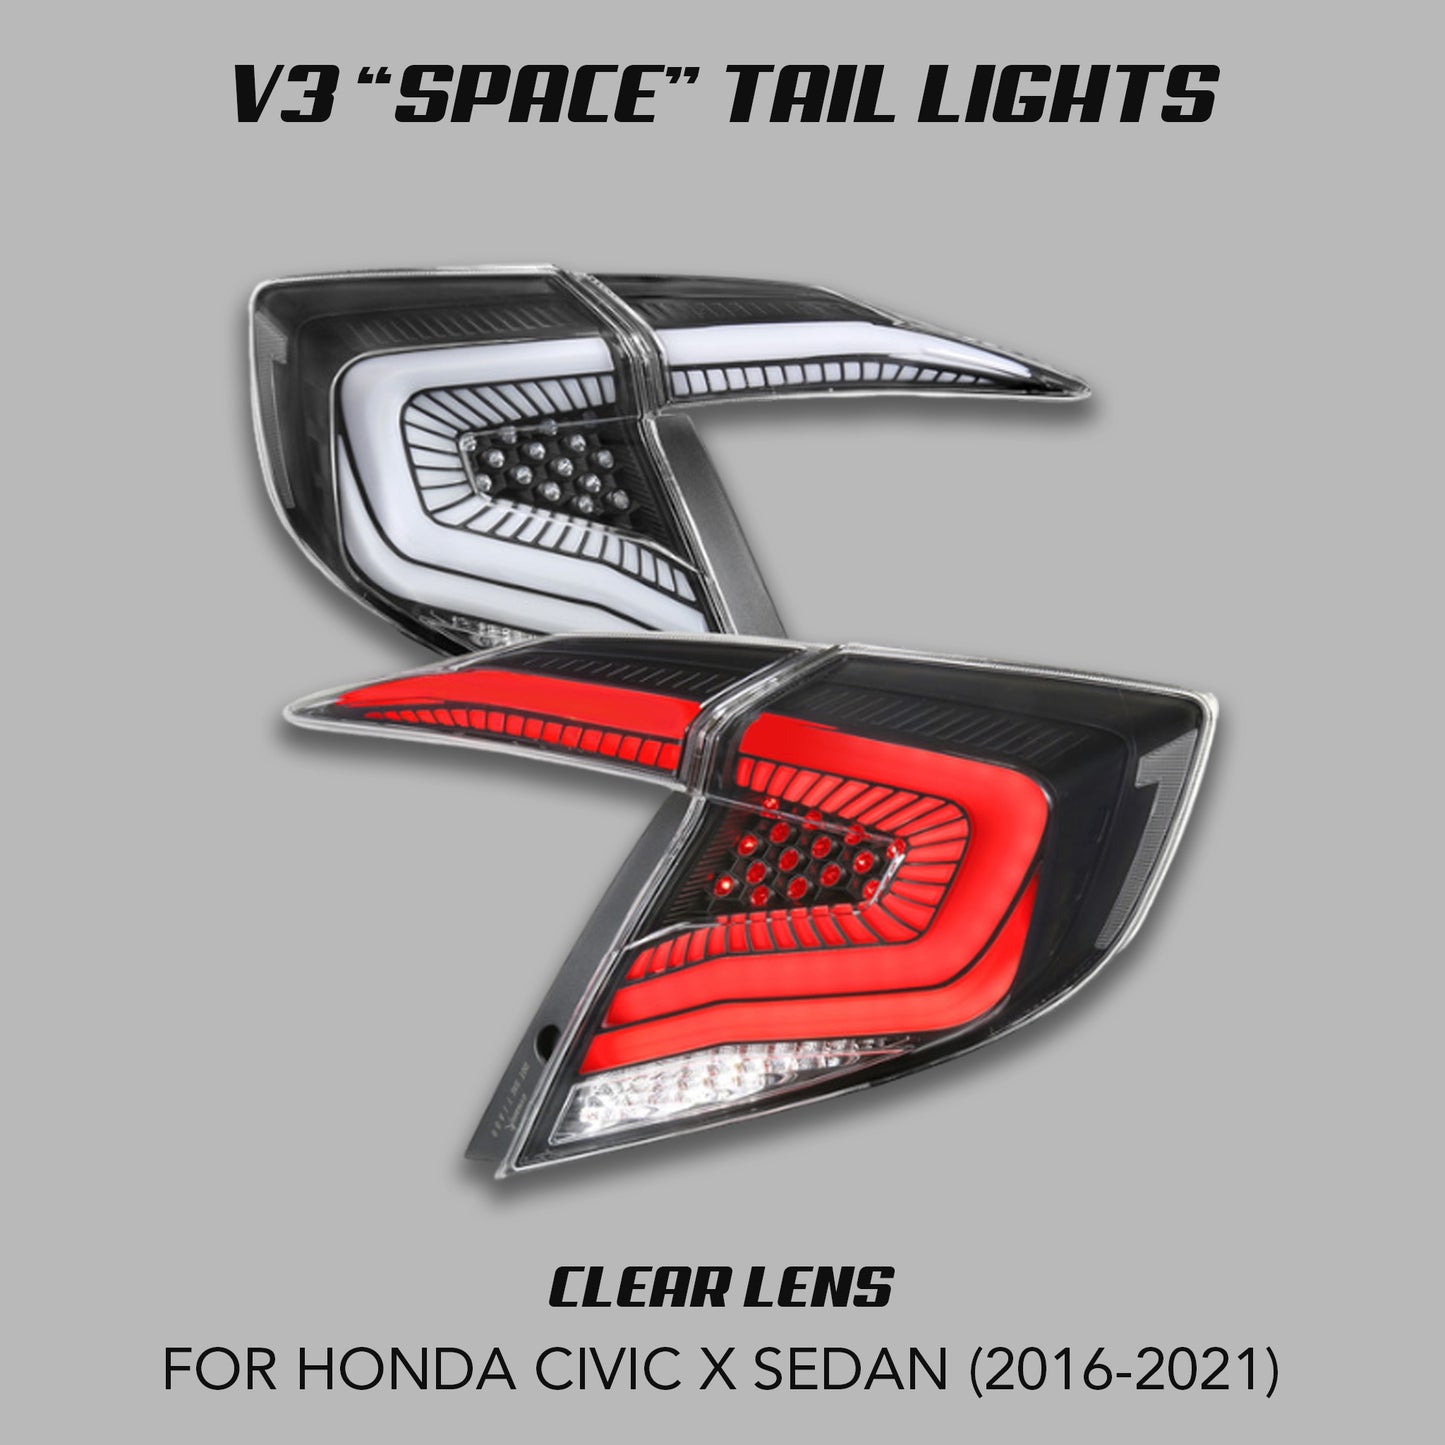 [CIVIC X SEDAN] V3 "SPACE" TAIL LIGHTS